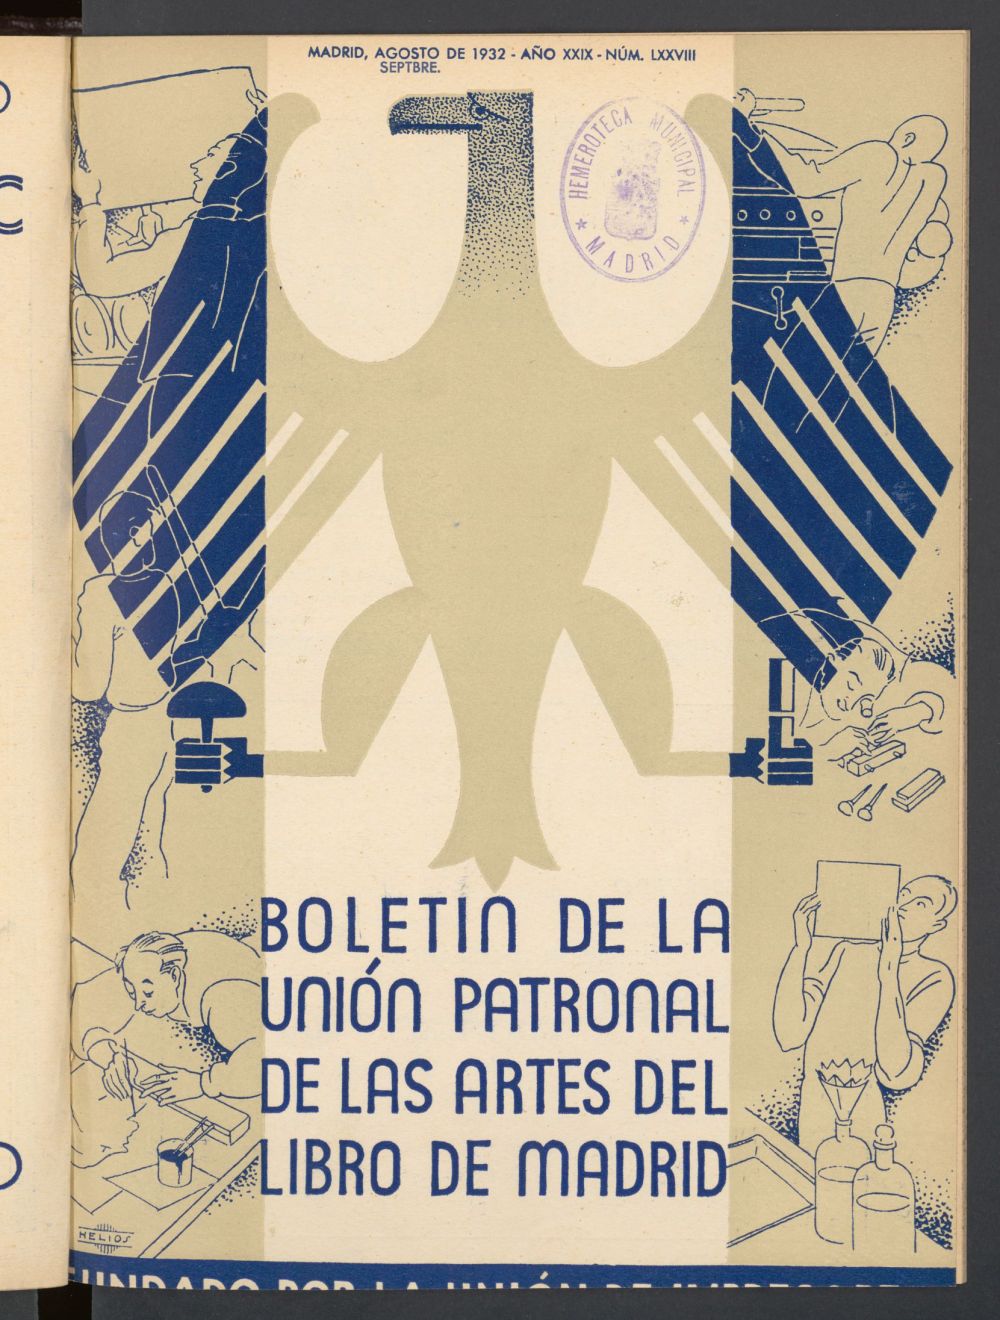 Boletn de la unin de impresores : rgano de la unin patronal de las artes del libro de agosto septbre de 1932